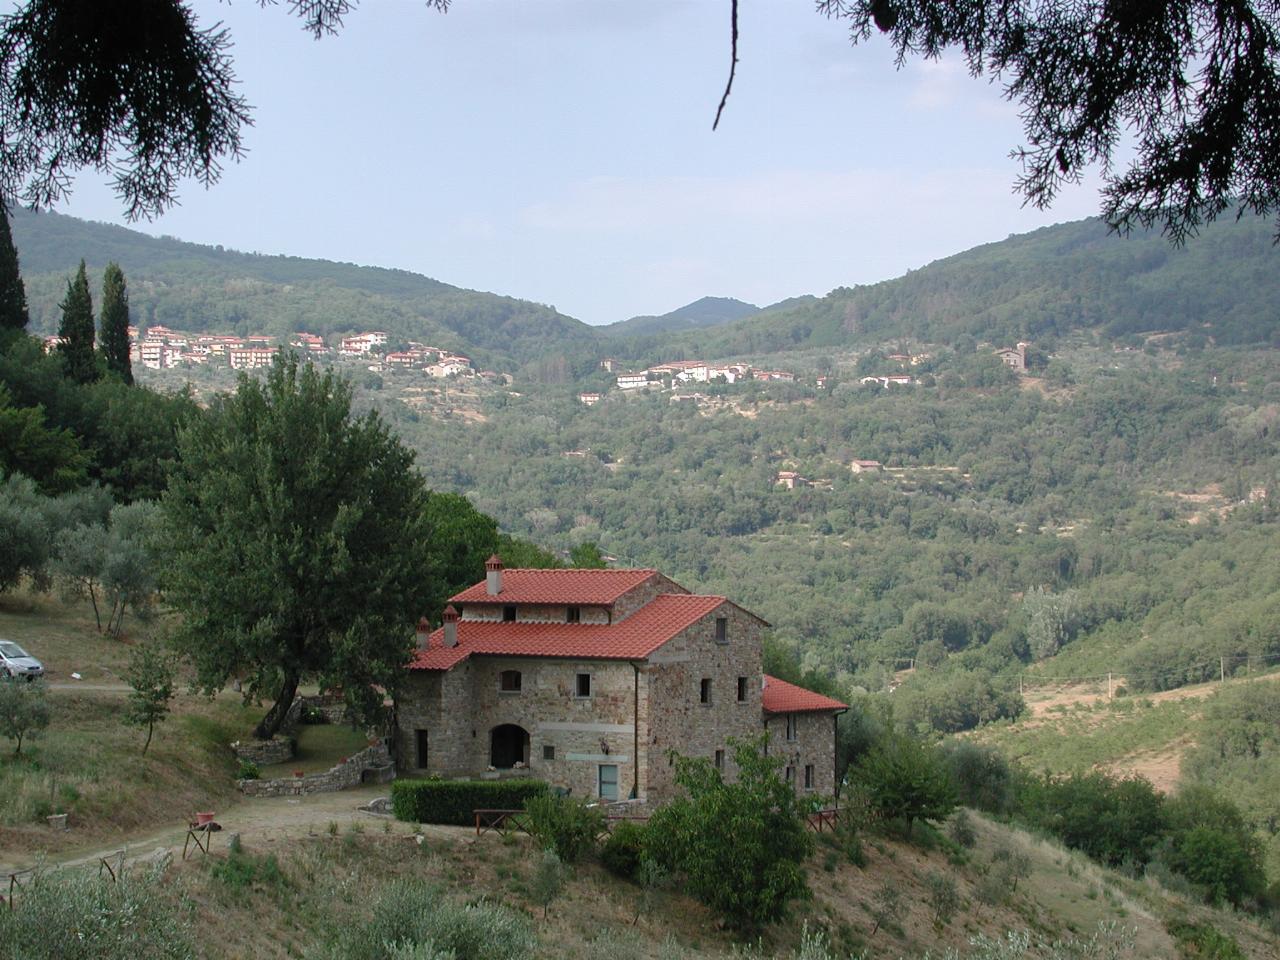 Another town in the hills near Castello del Trebbio